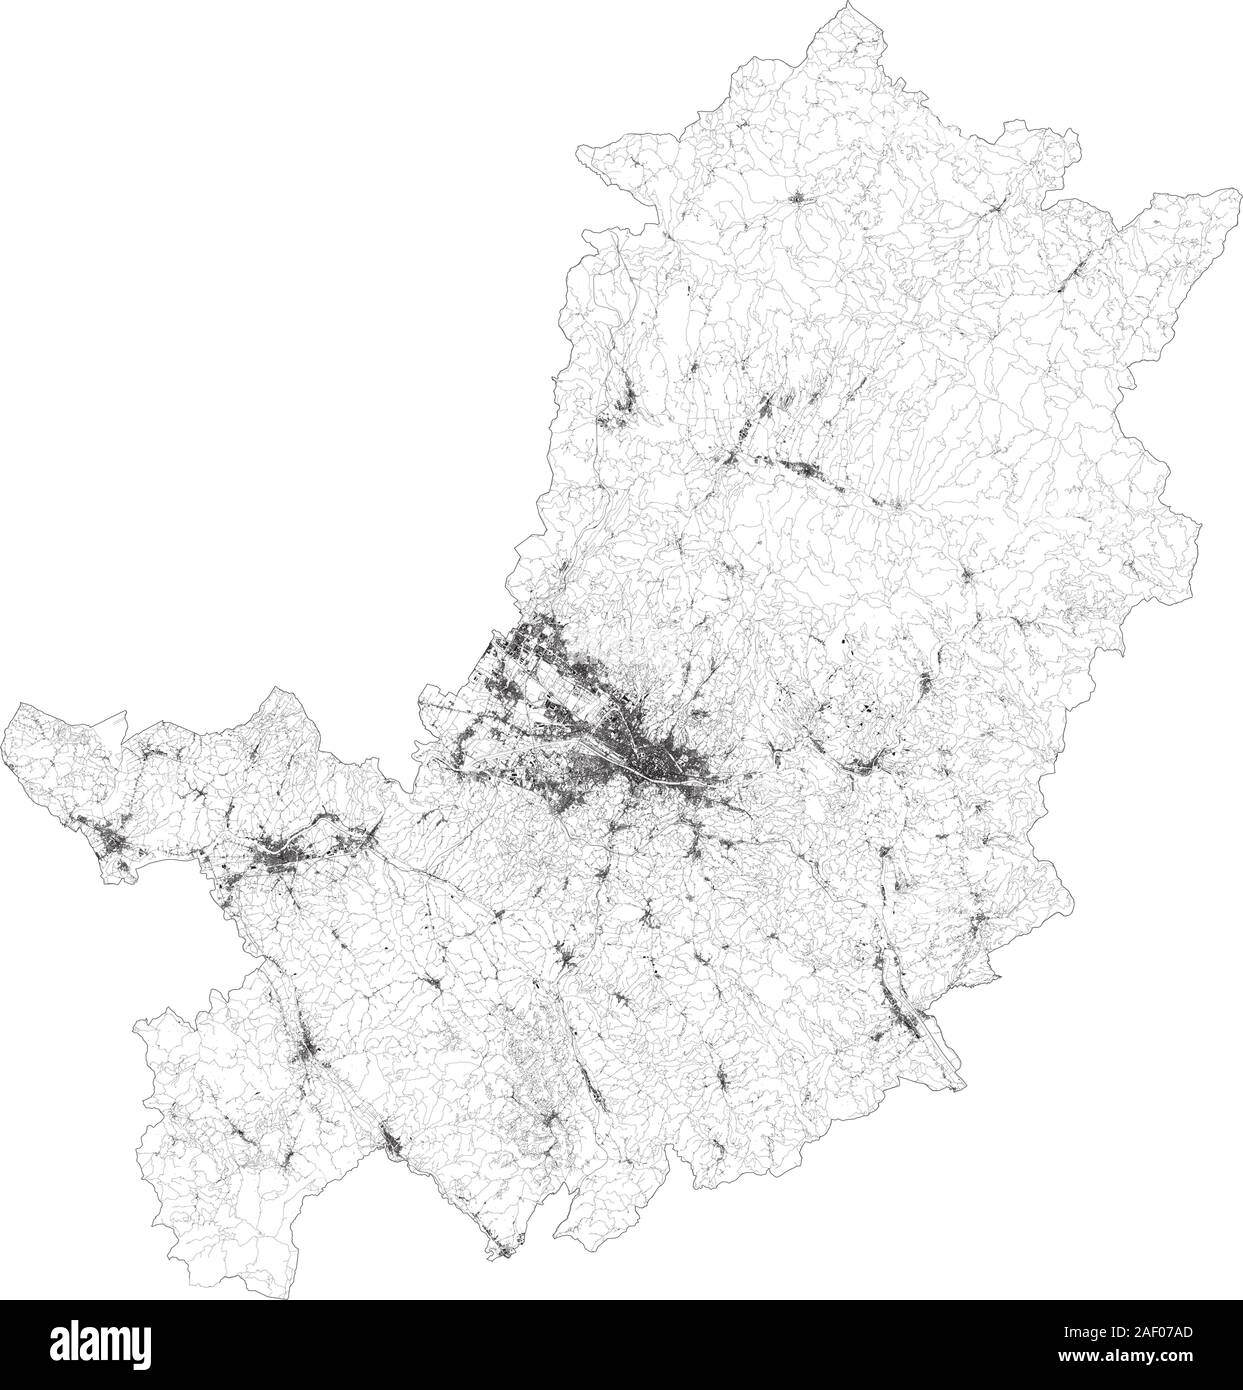 Mapa satelital de la provincia de Florencia, Firenze, ciudades y carreteras, edificios y carreteras de los alrededores. Toscana, Italia. Mapa de carreteras Ilustración del Vector